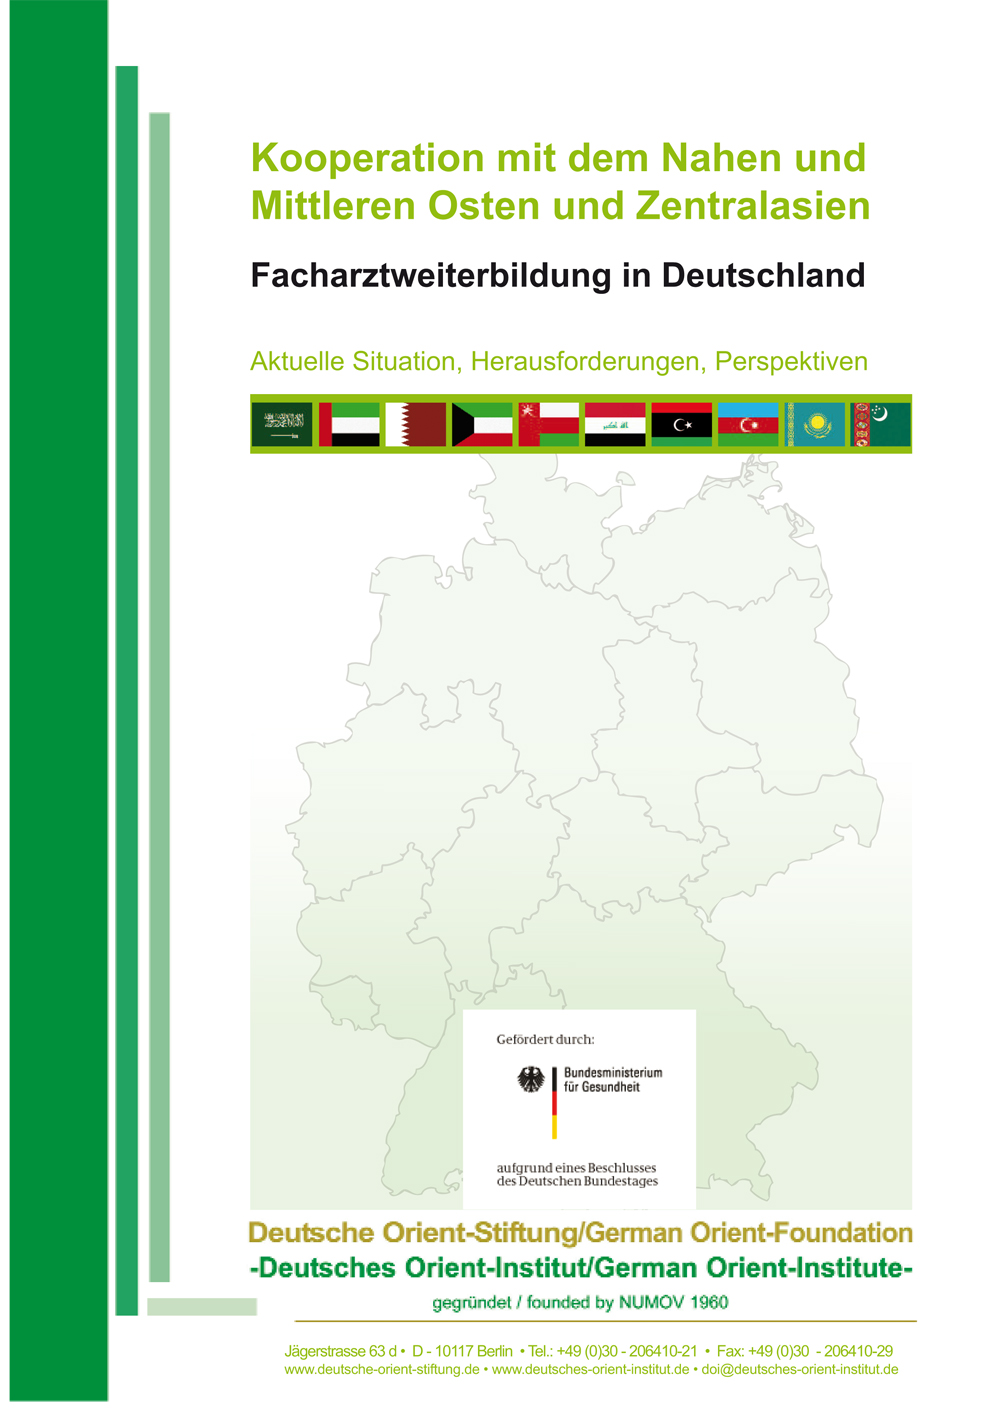 Featured image for “Kooperation mit dem Nahen und Mittleren Osten und Zentralasien: Facharztweiterbildung in Deutschland – Aktuelle Situation, Herausforderungen, Perspektive”